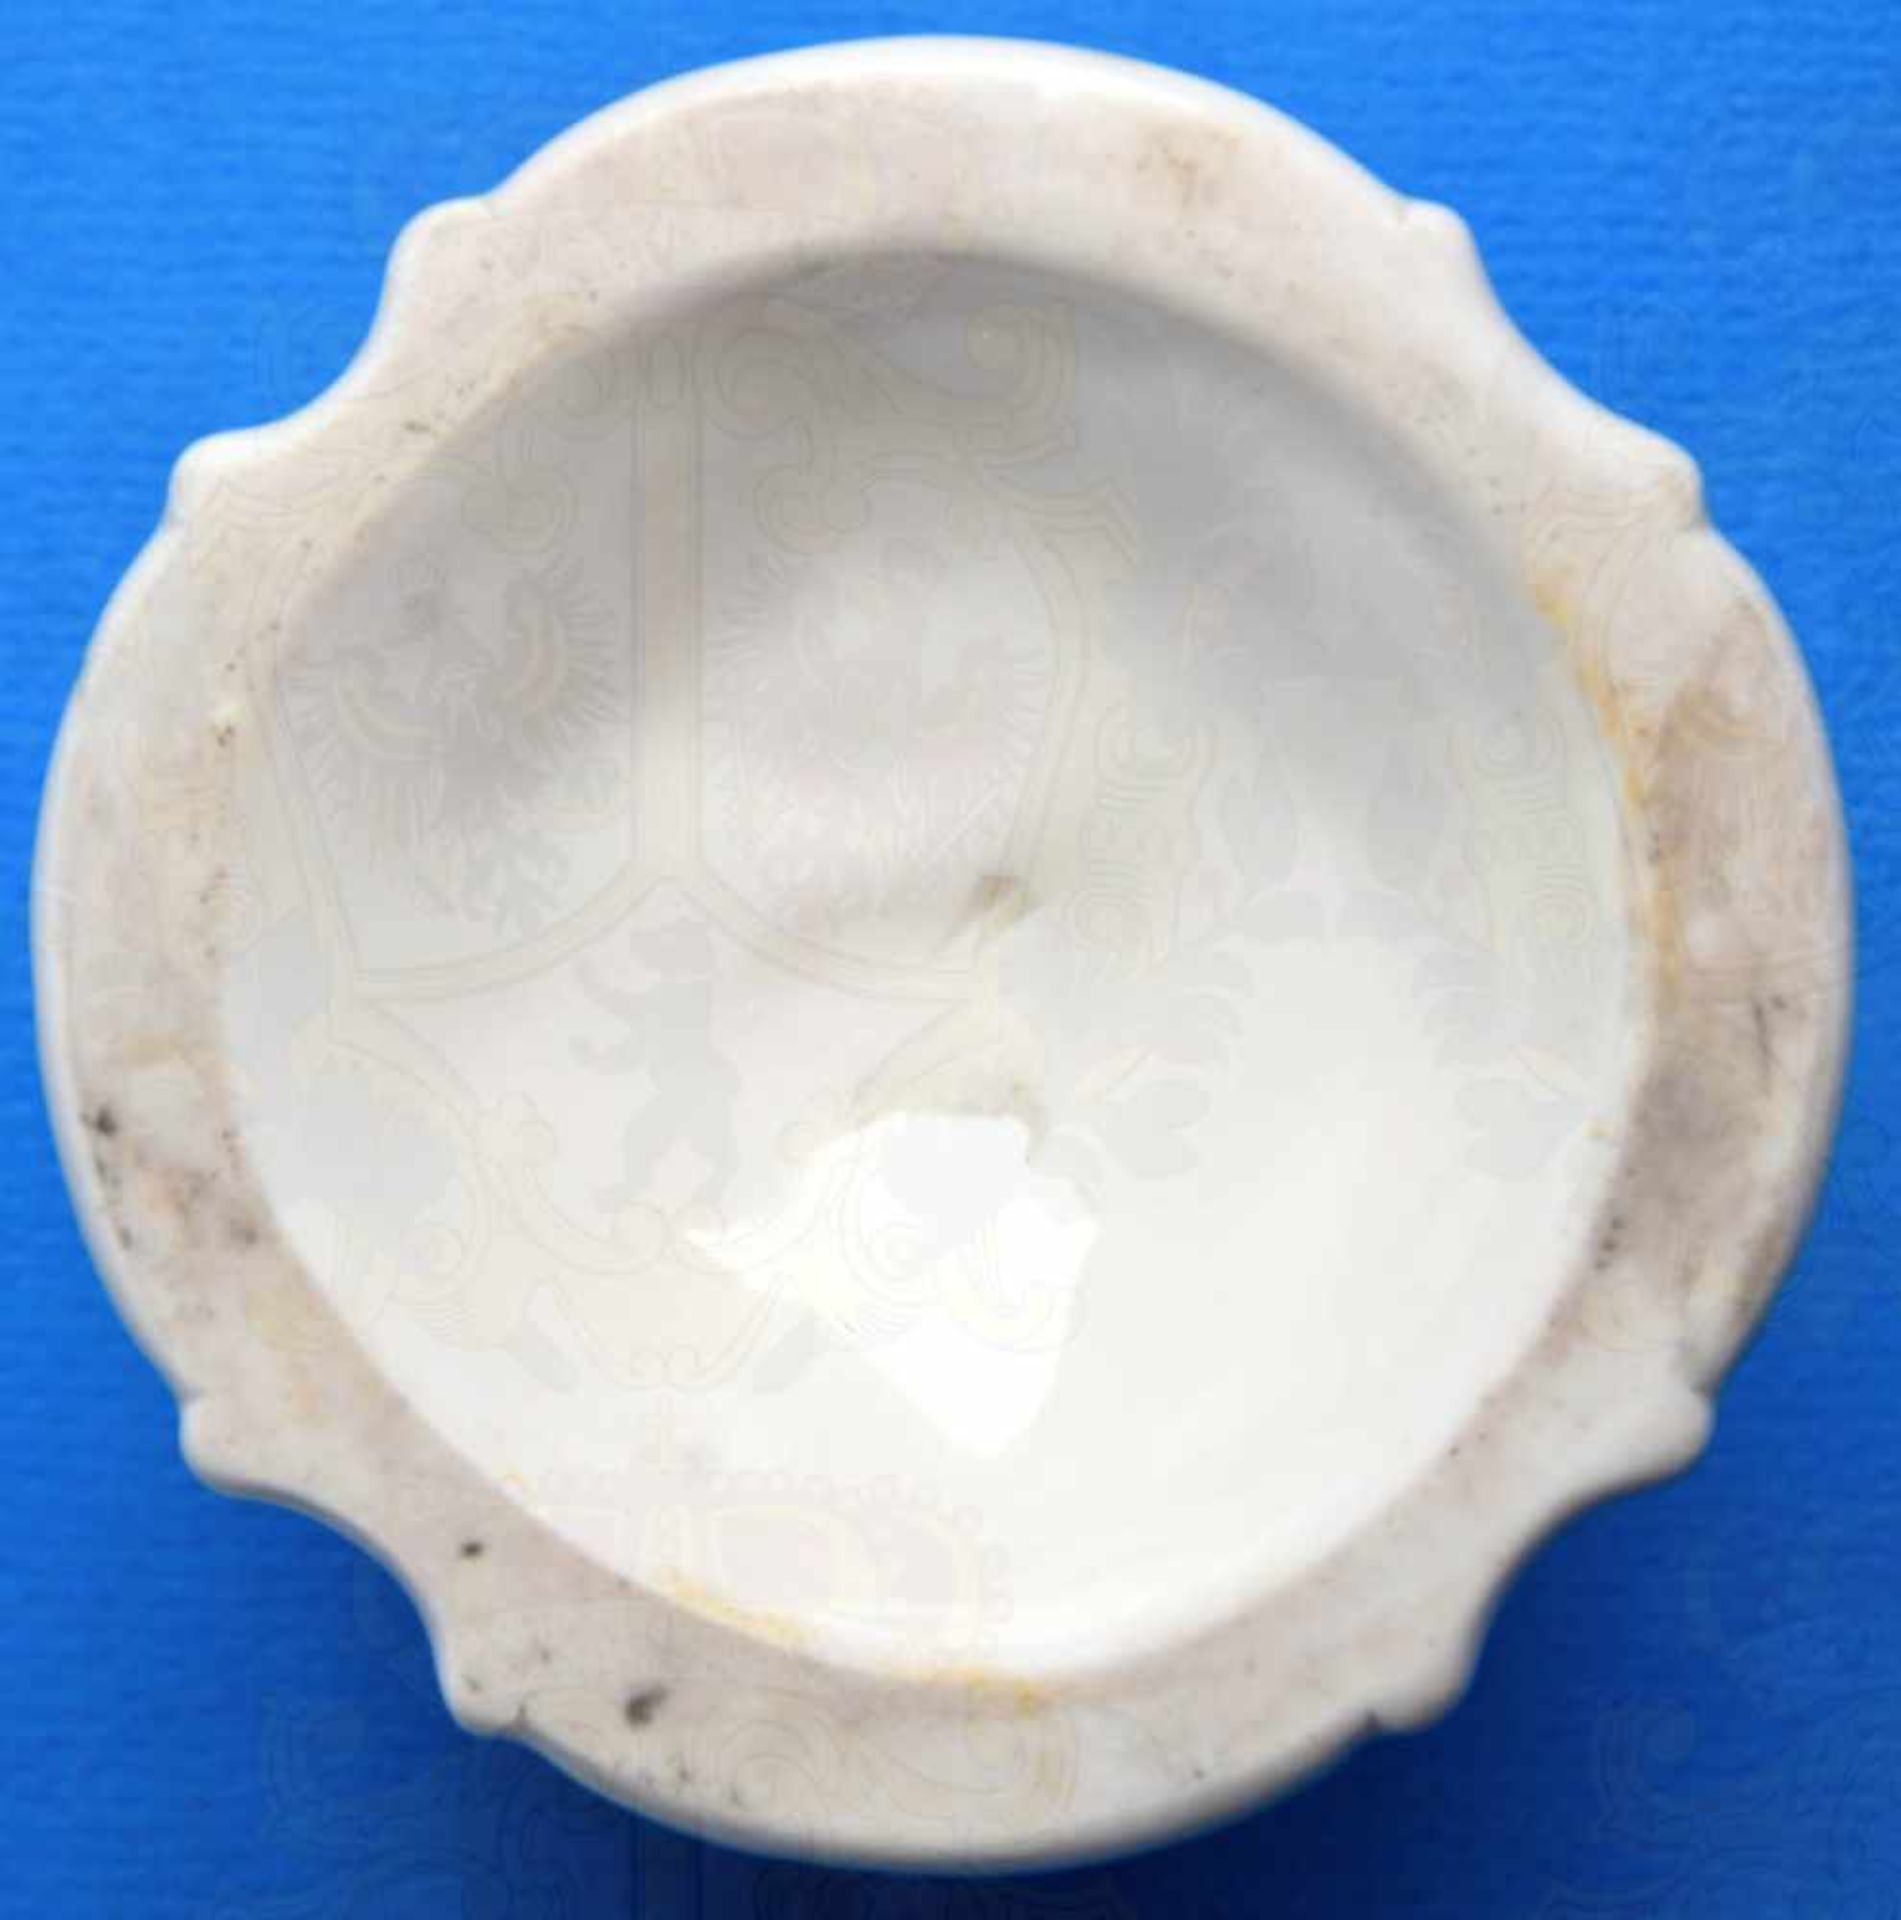 ALLACH BAROCKER LEUCHTER, 1 kerzig, weißes Porzellan, glasiert, im Boden, „Allach“ und Rune, - Bild 3 aus 3